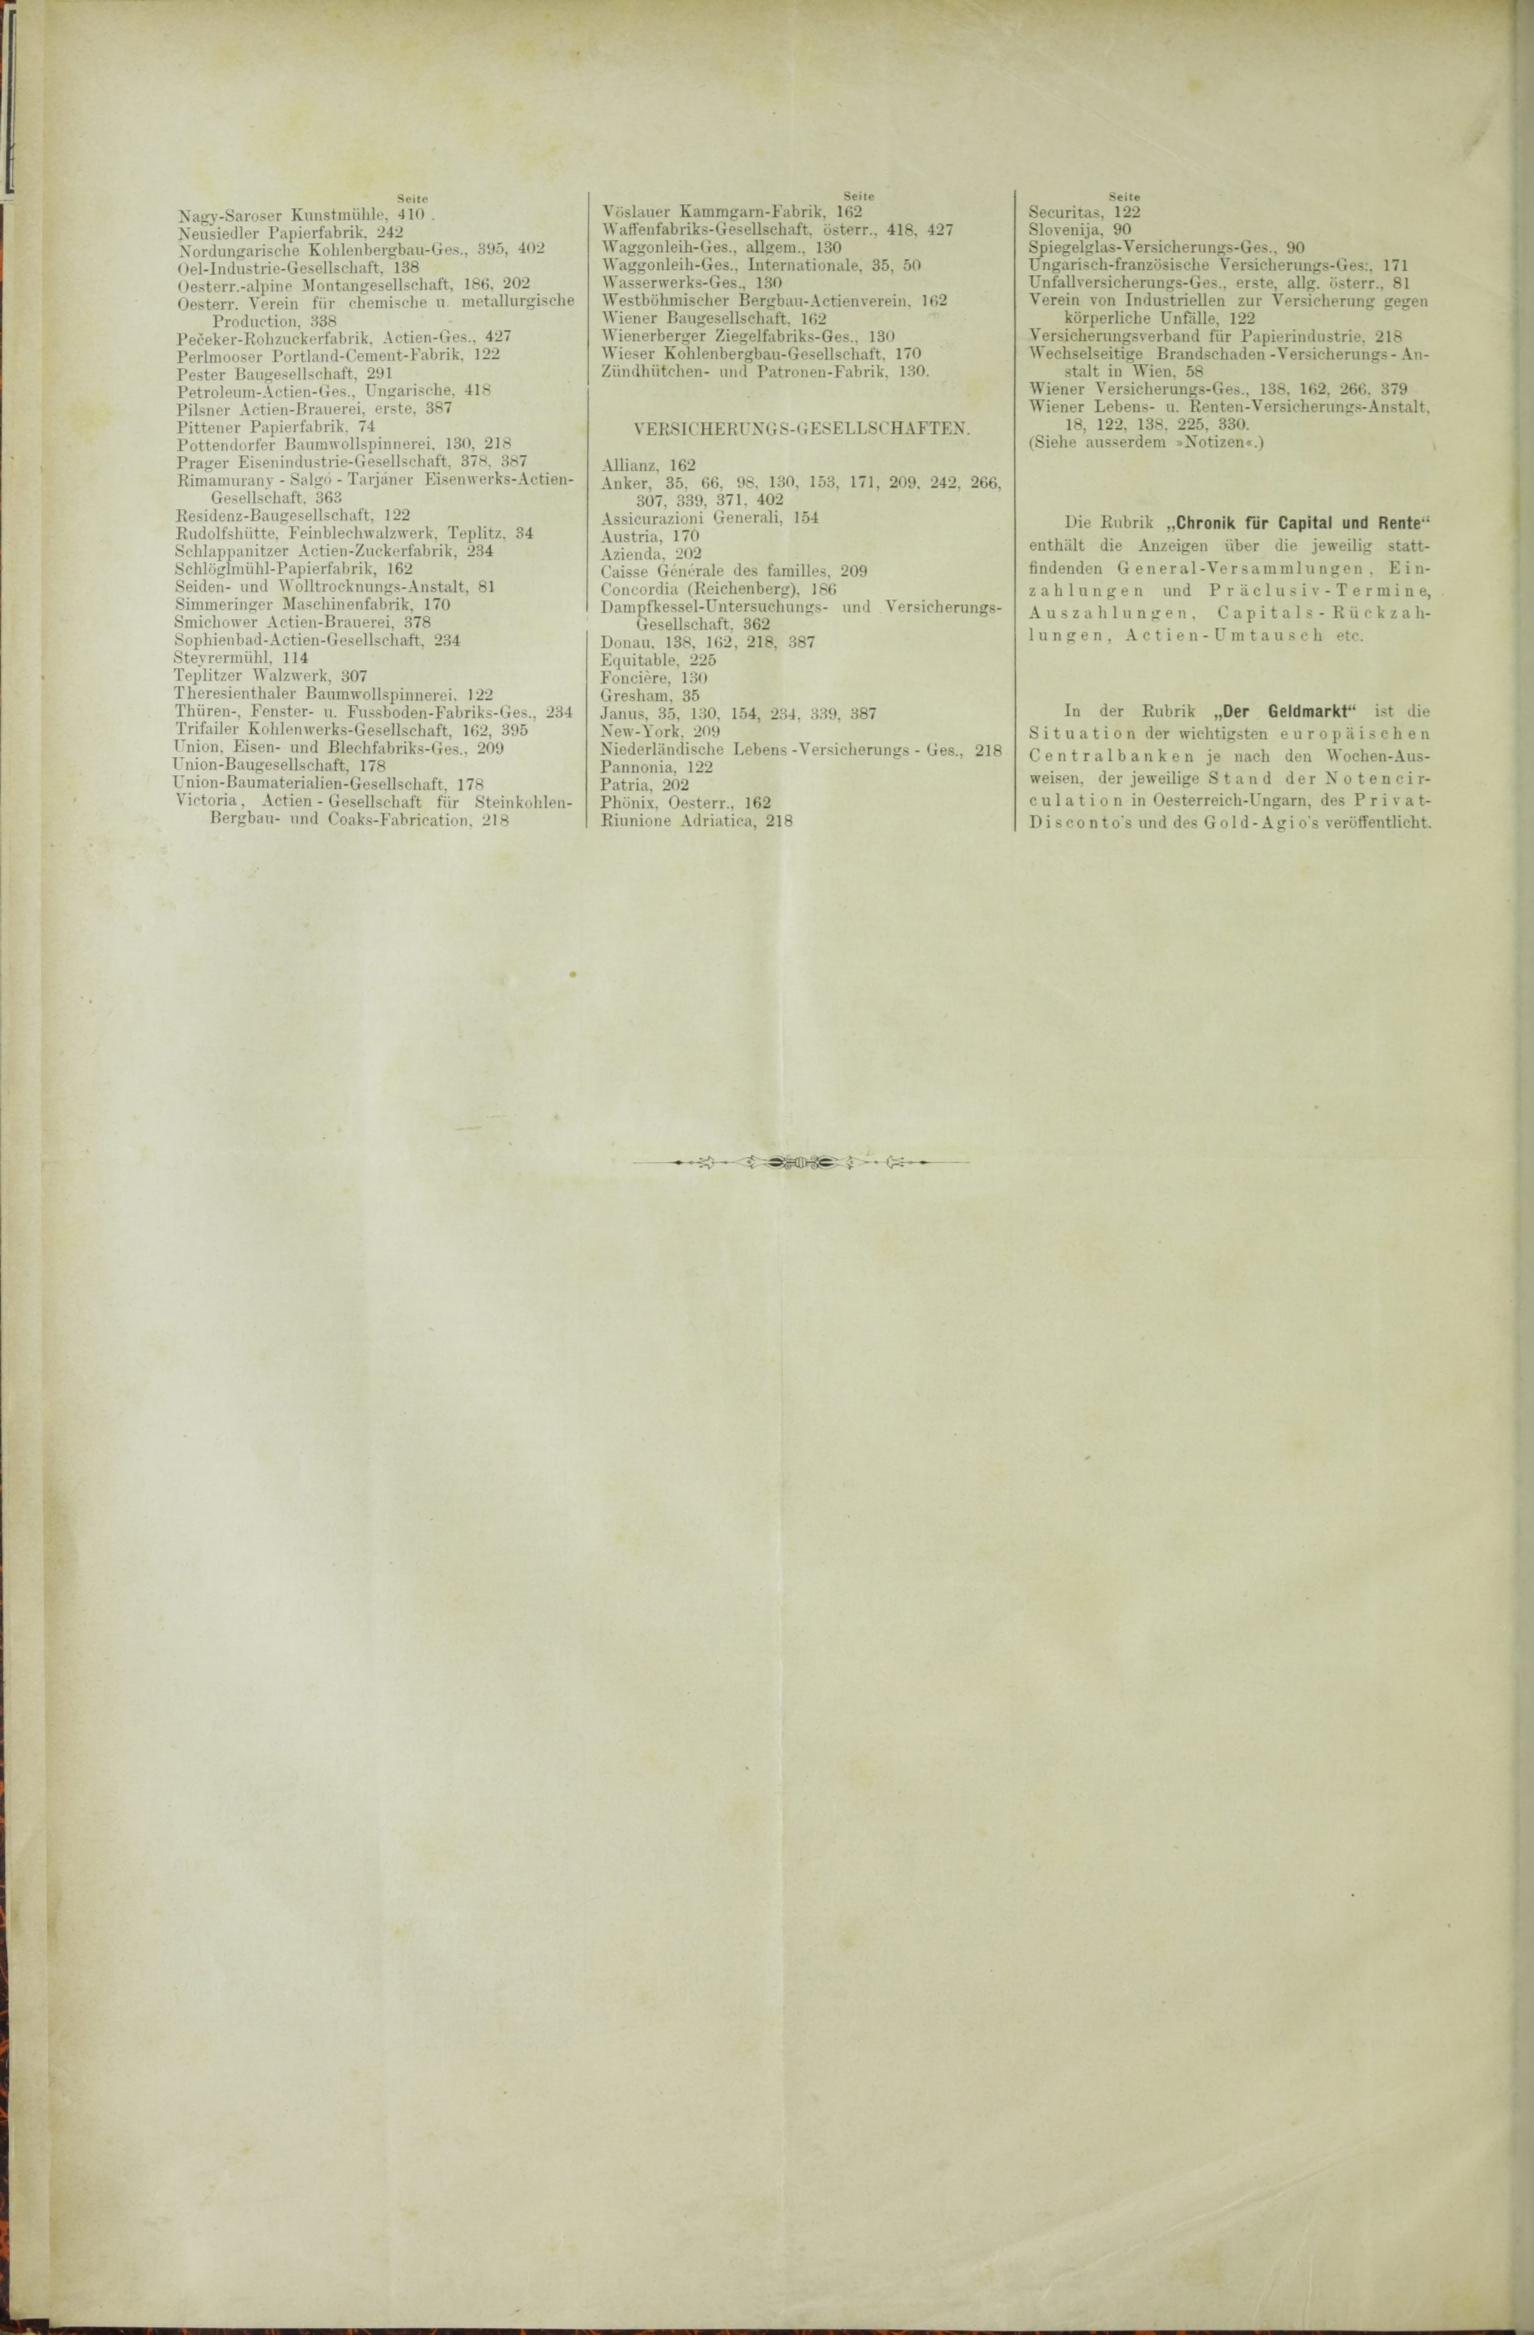 Der Tresor 21.05.1885 - Seite 12